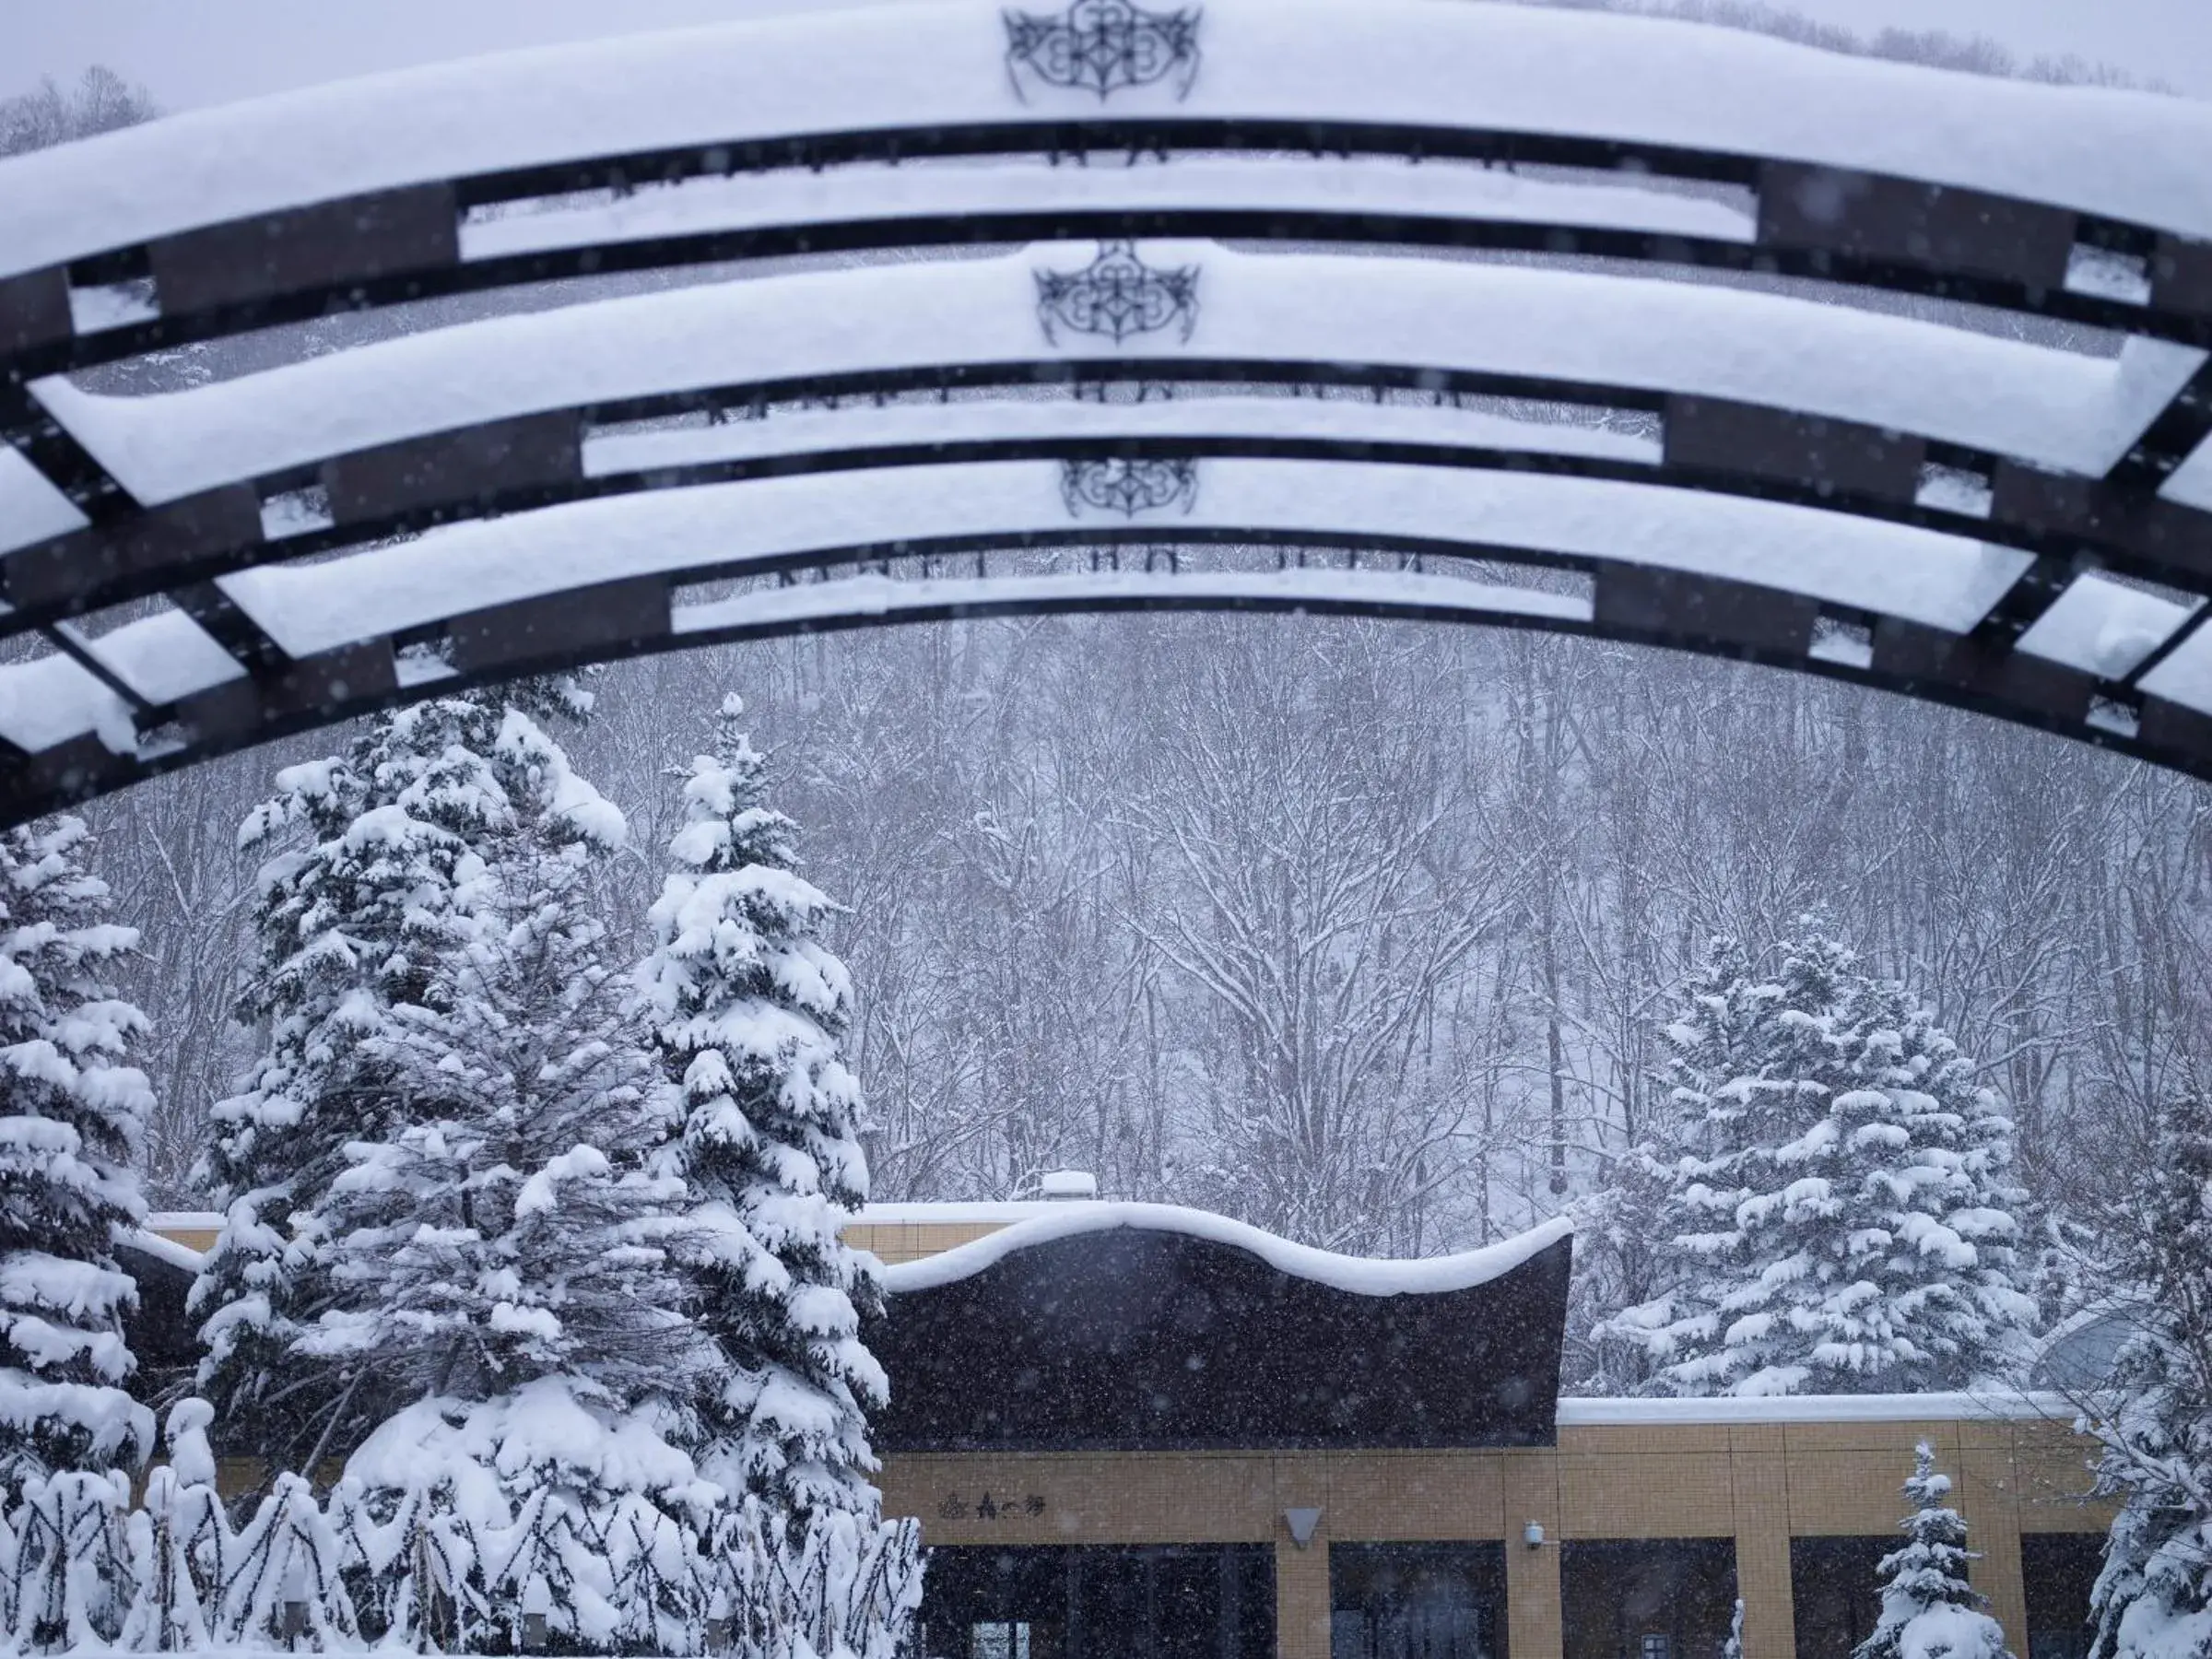 Property building, Winter in Jozankei Tsuruga Resort Spa Mori no Uta